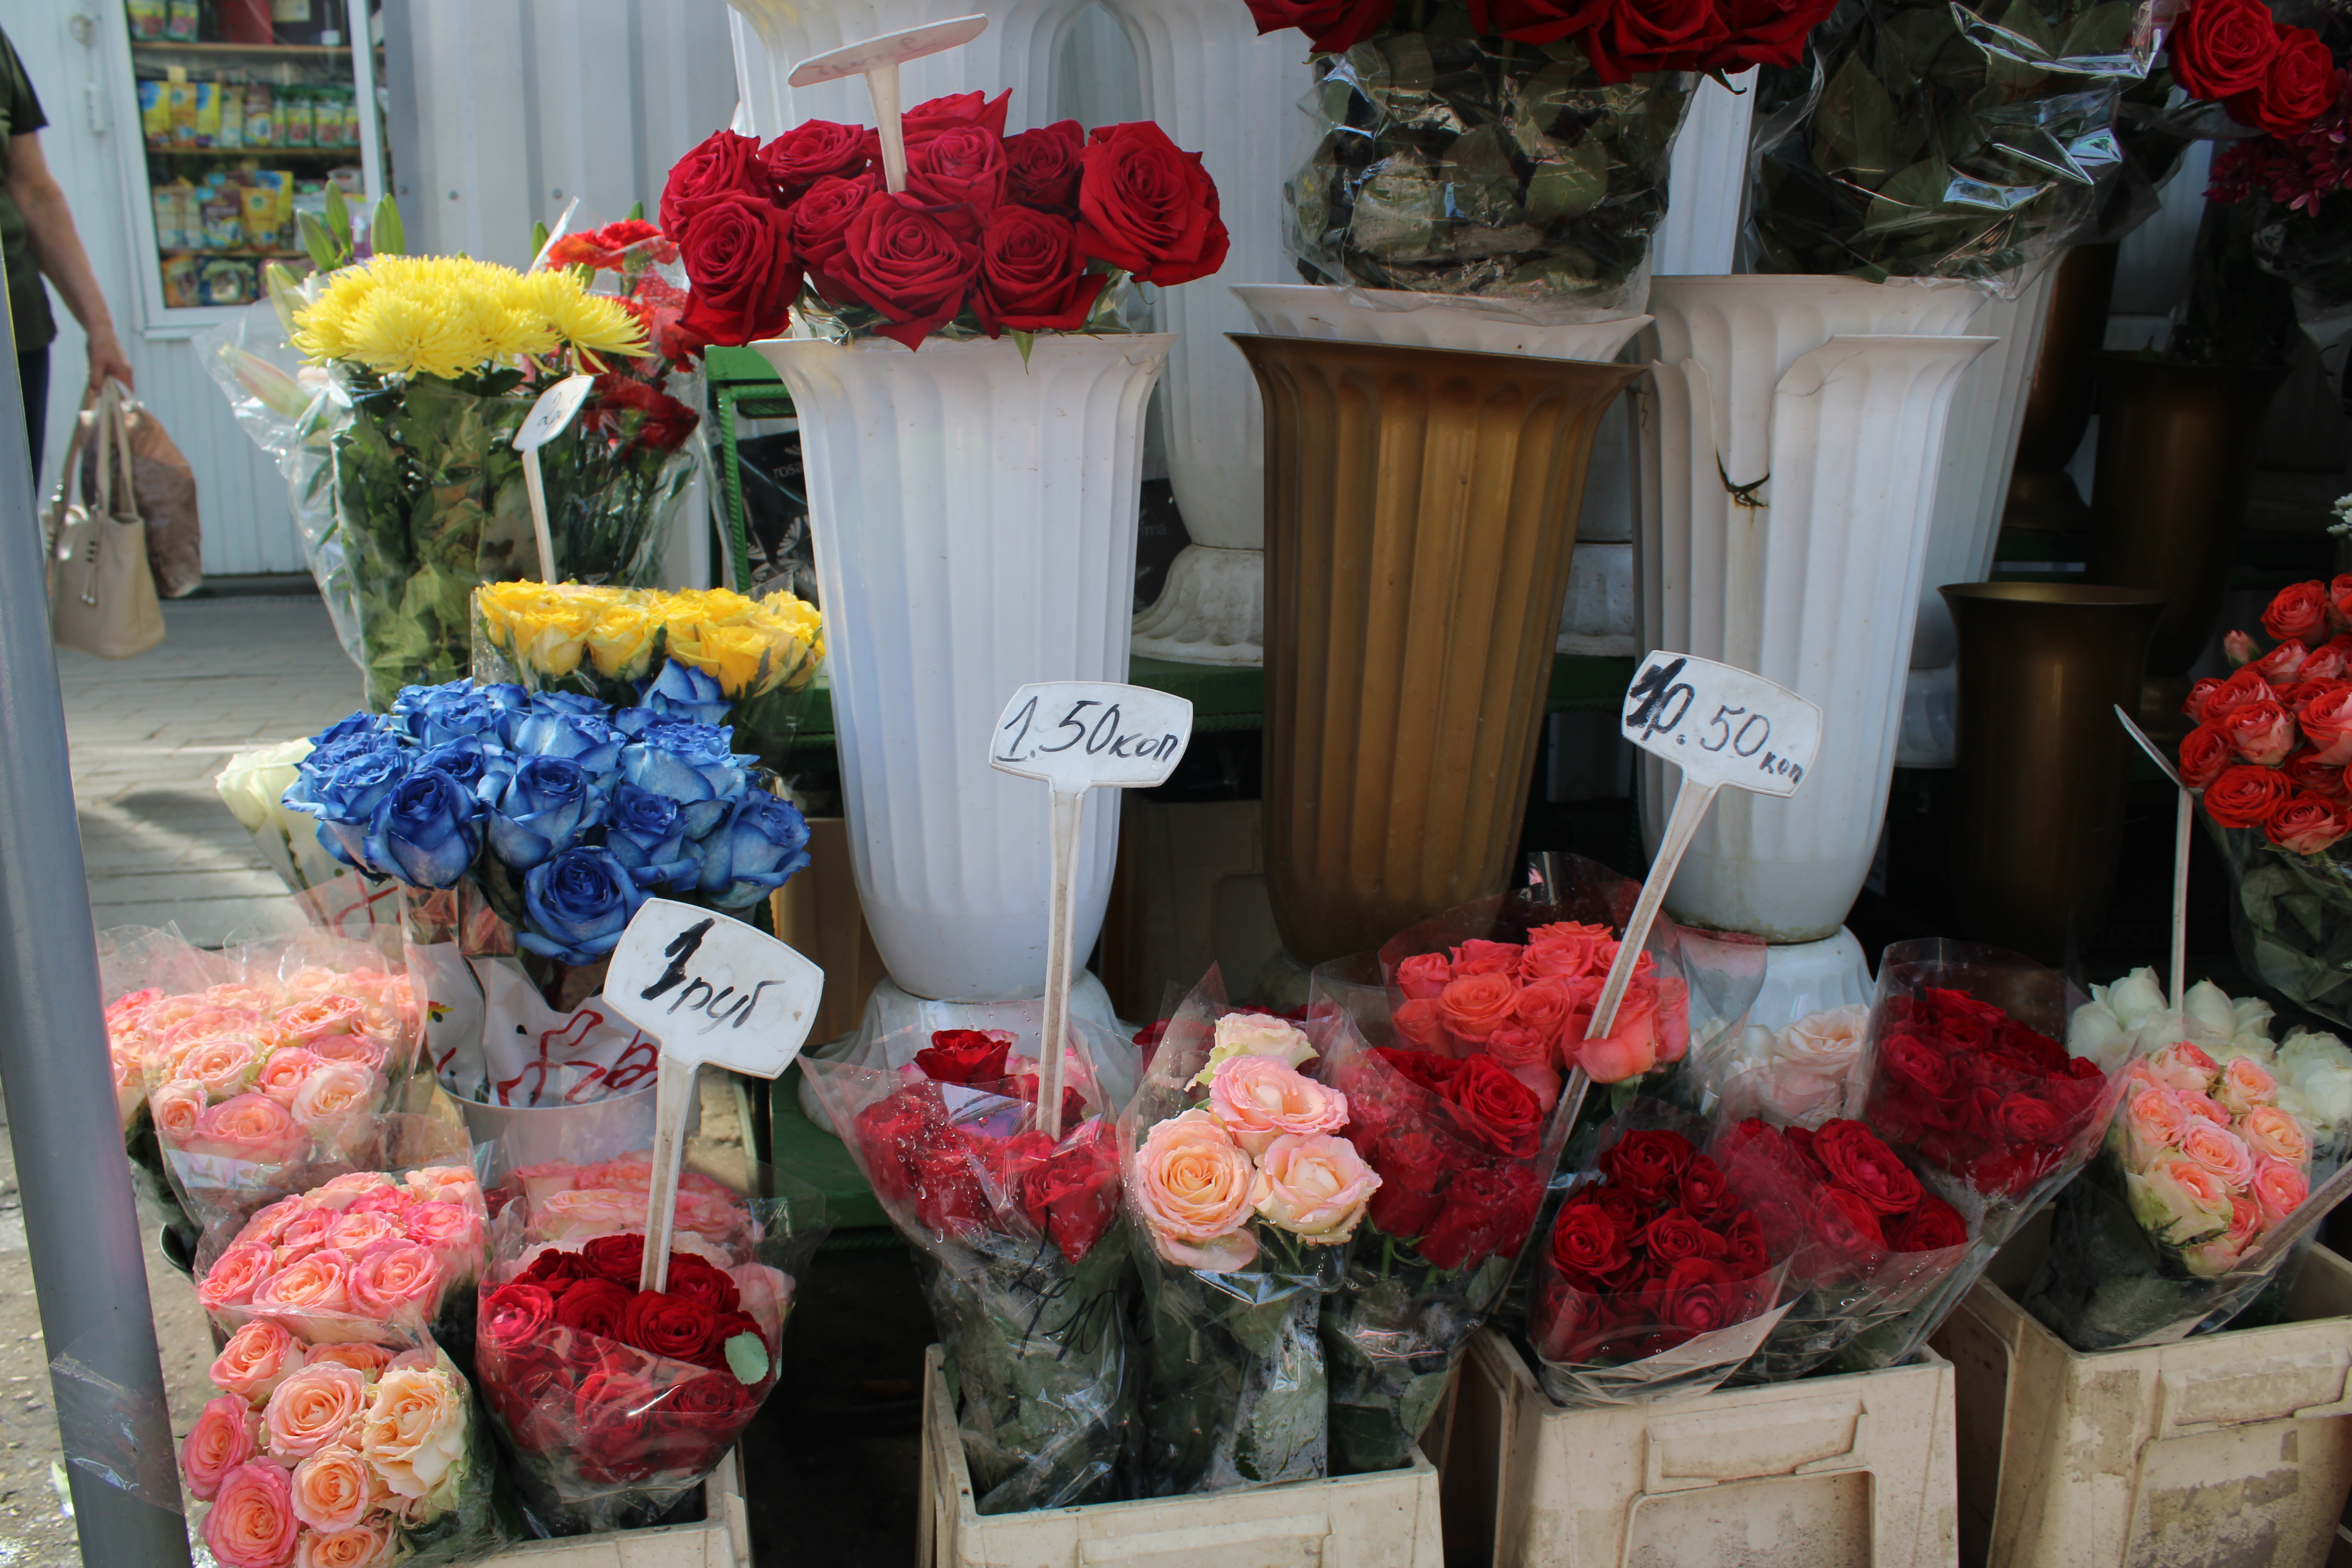 Купить розы в цветочном магазине. Розы в цветочном магазине. Цветочный магазин розовый. Роса цветочный магазин.